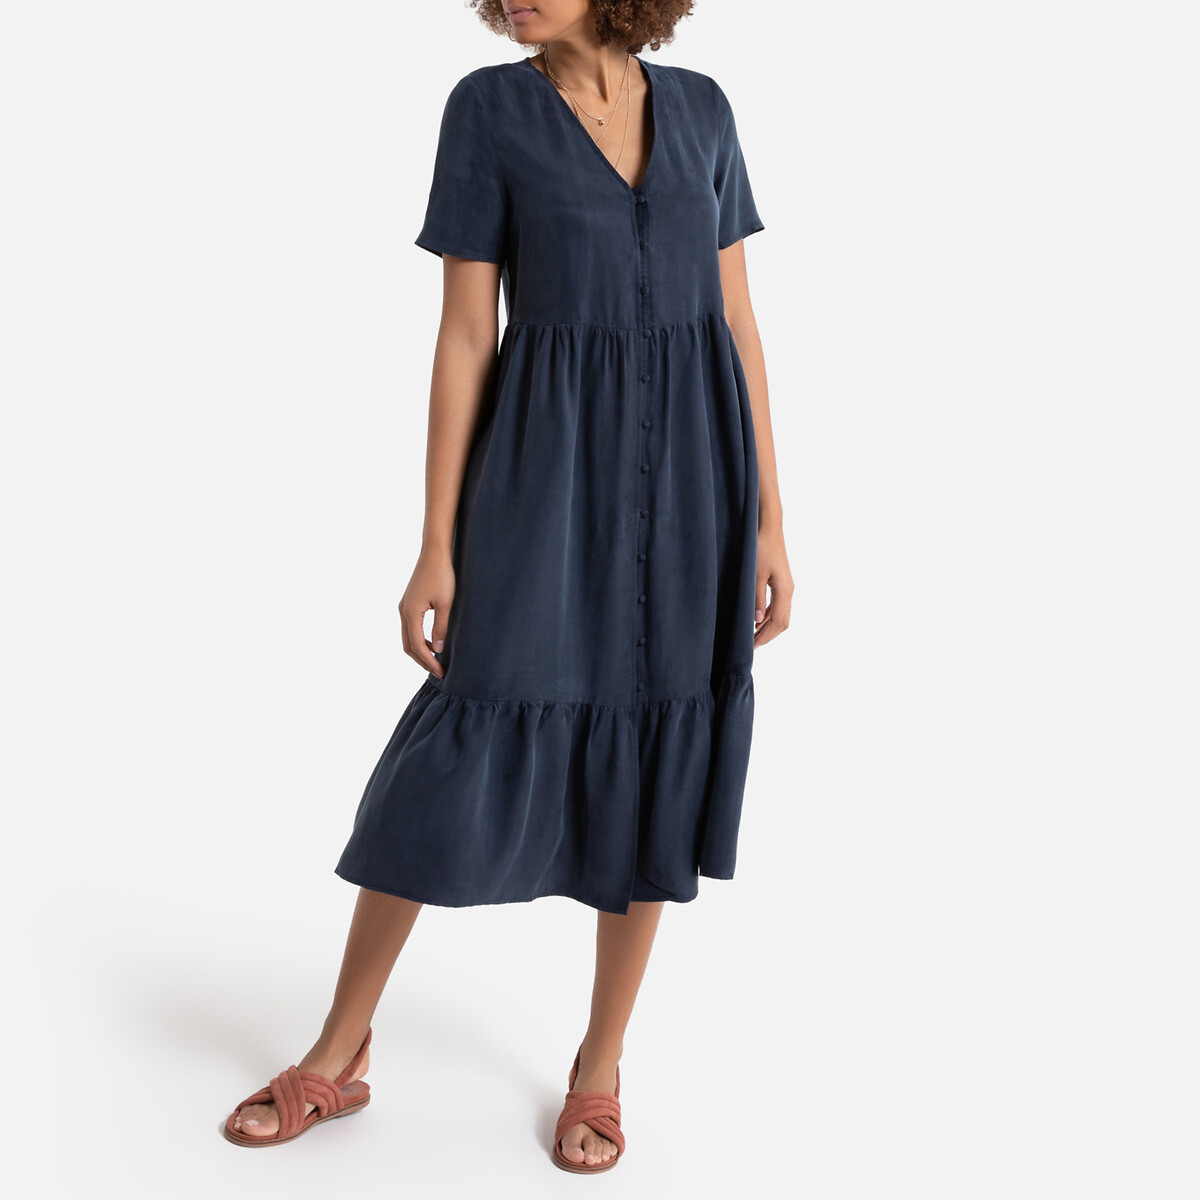 Платье La Redoute С V-образным вырезом с короткими рукавами средней длины 38 (FR) - 44 (RUS) синий, размер 38 (FR) - 44 (RUS) С V-образным вырезом с короткими рукавами средней длины 38 (FR) - 44 (RUS) синий - фото 2